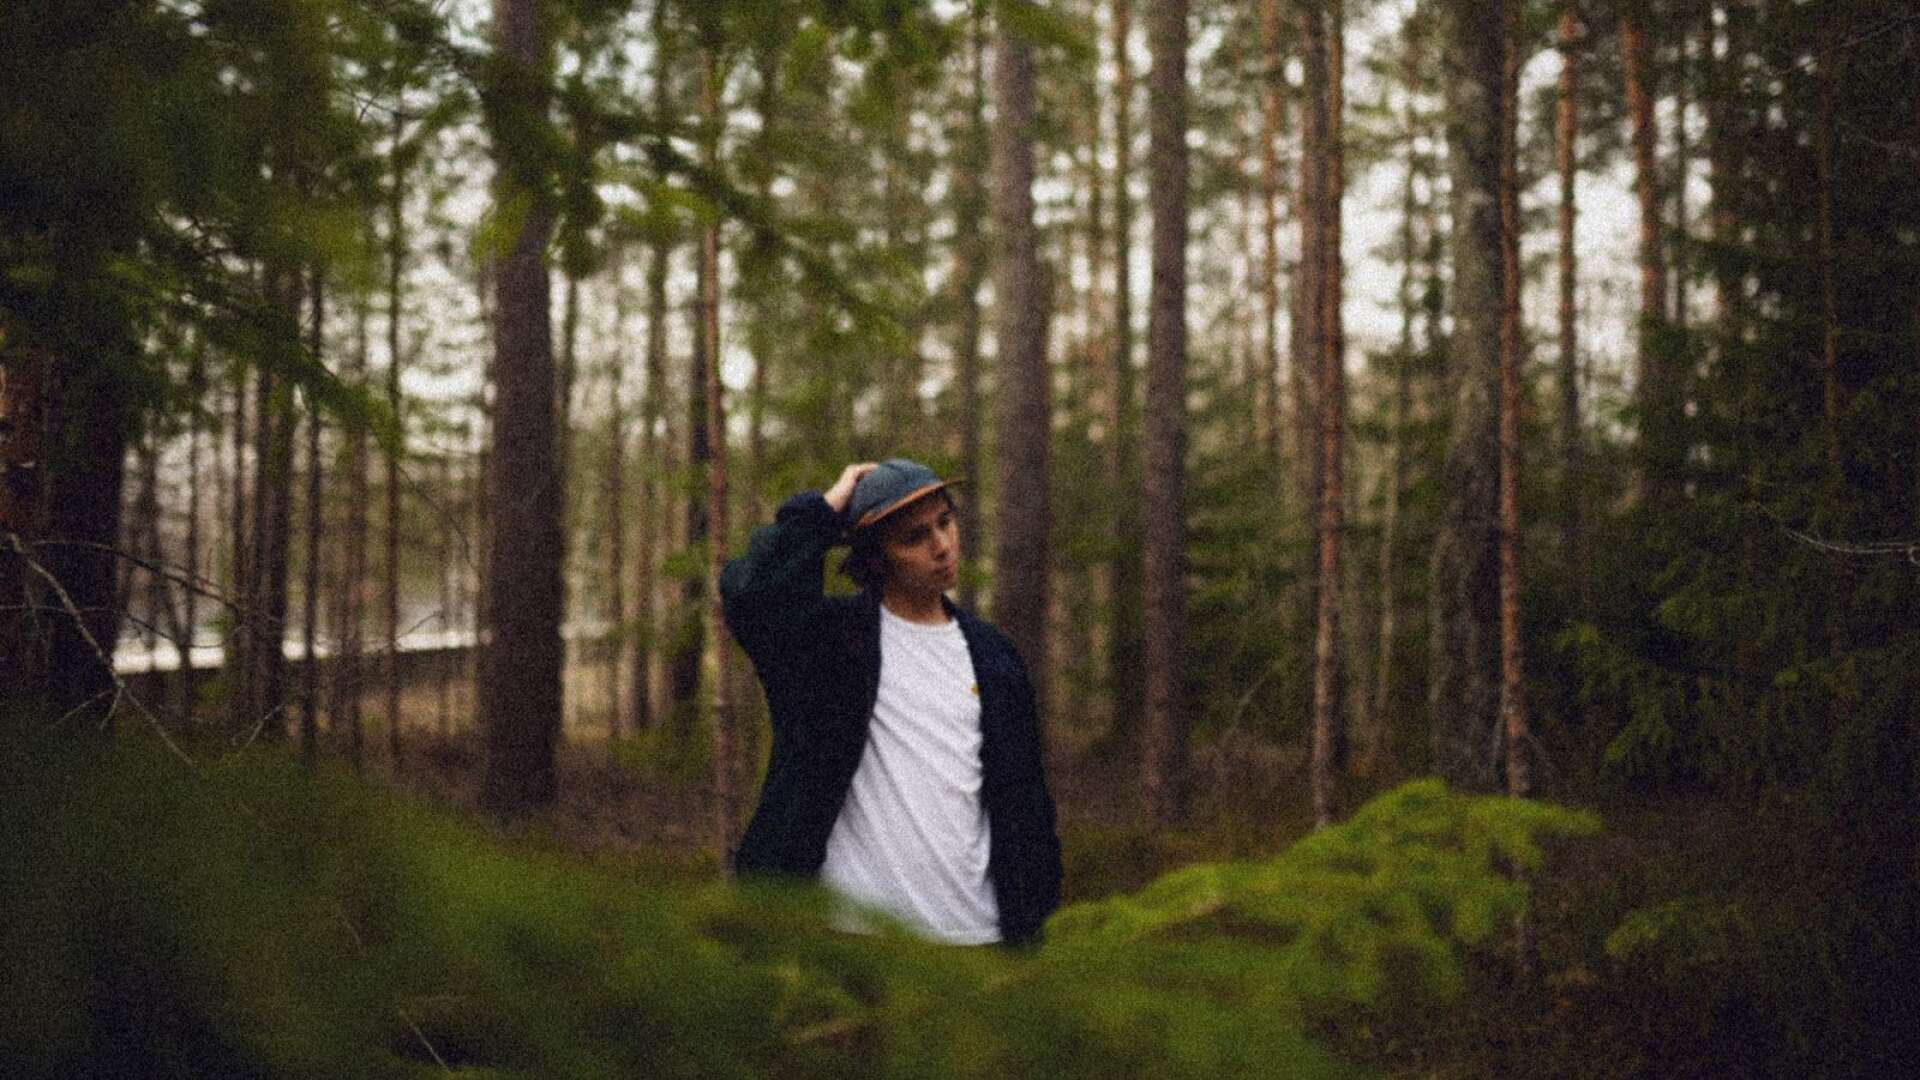 Värmländske Simon Öman släpper musik under namnet Sam Florian. Om en vecka väntar debutalbumet och till hösten släpps en ep på svenska.